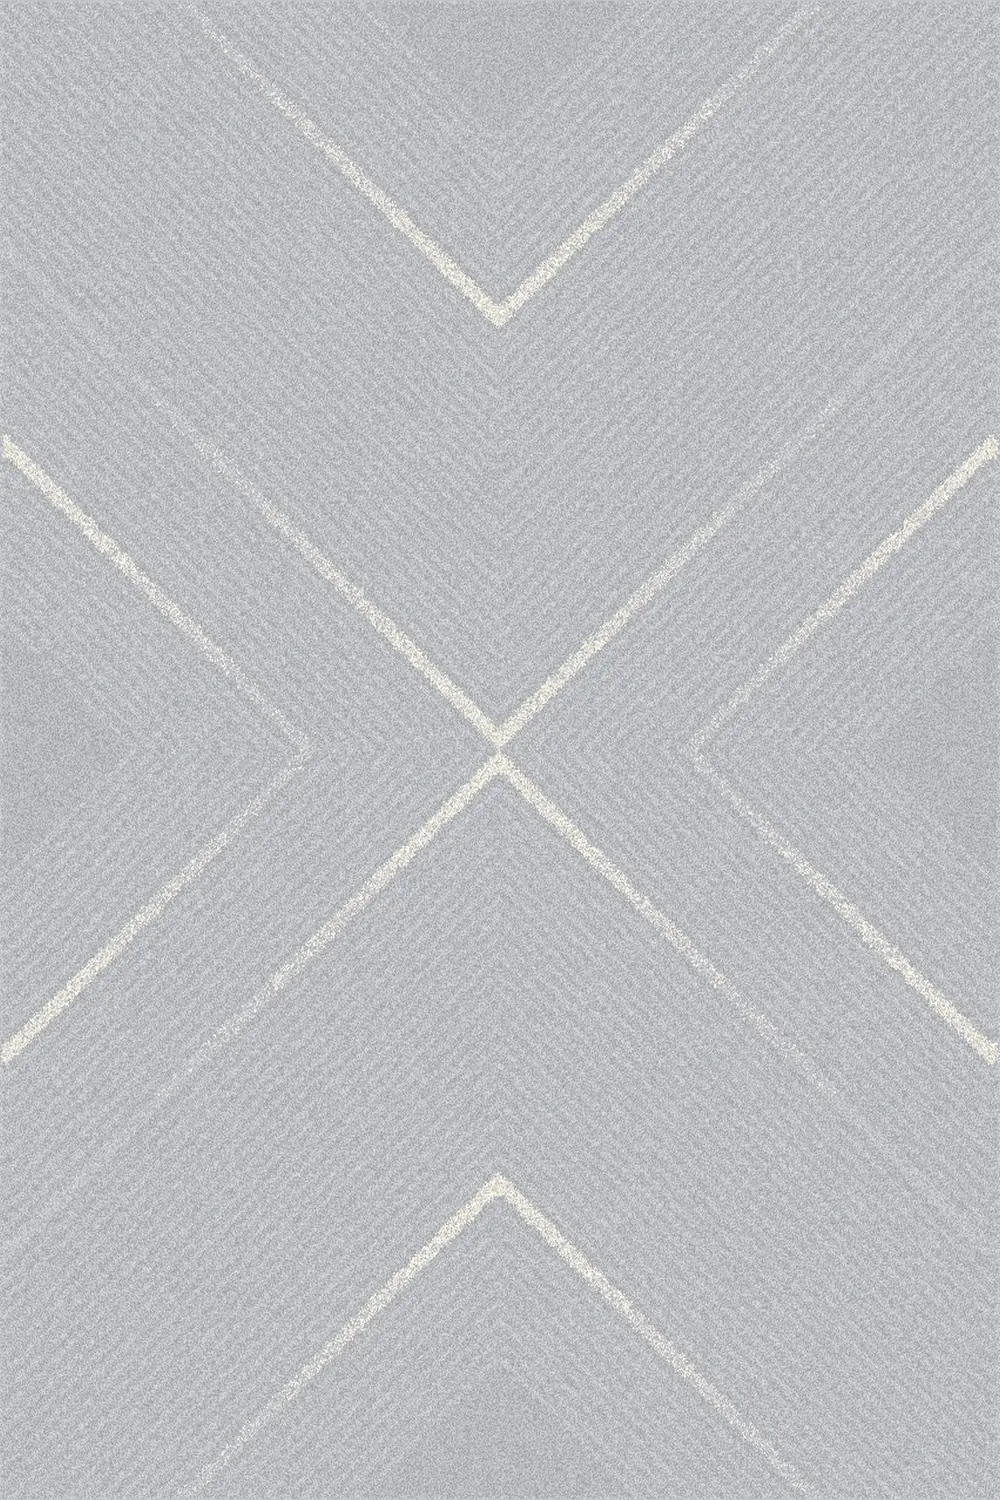 Kusový koberec Stelo linen